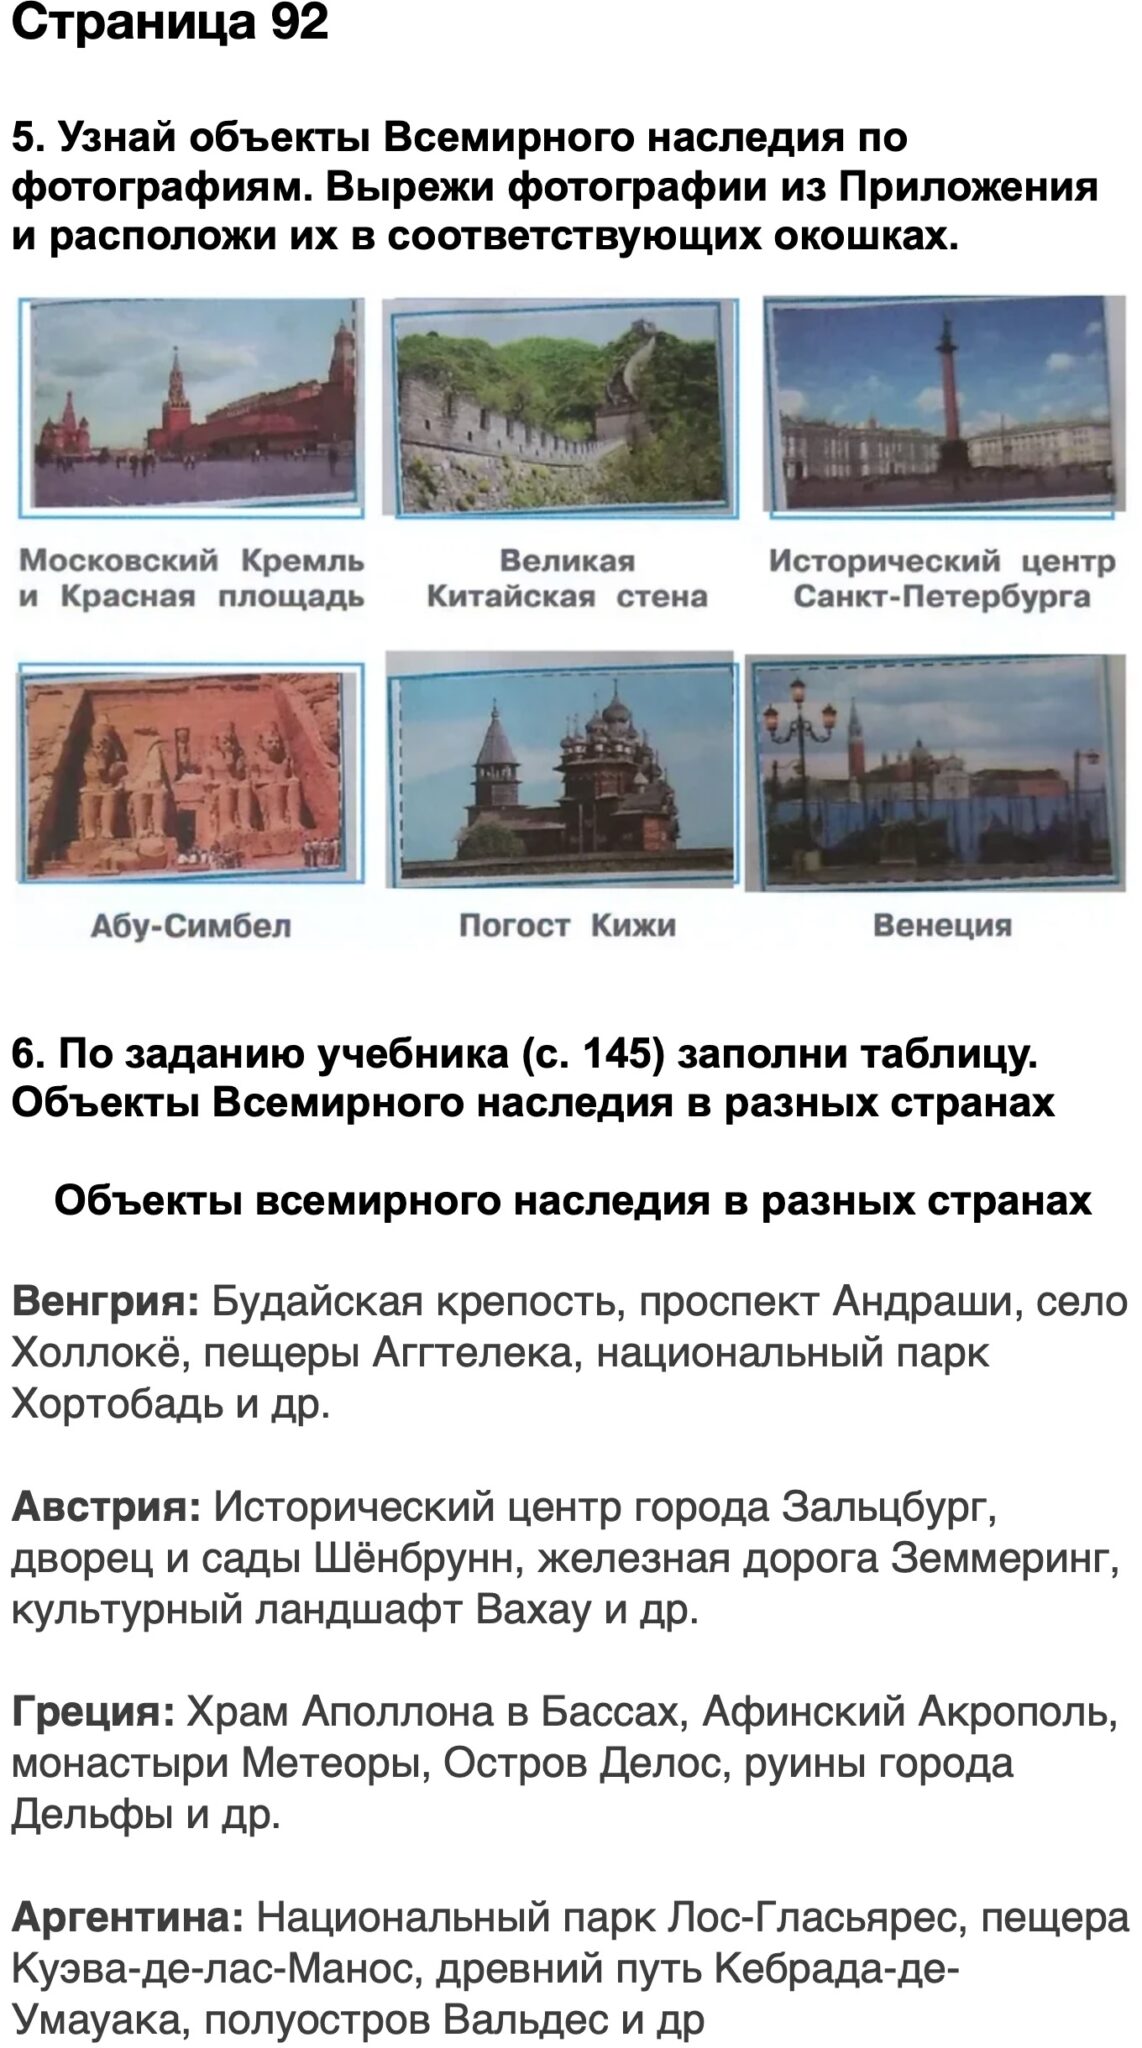 Объекты Всемирного наследия в разных странах Плешаков